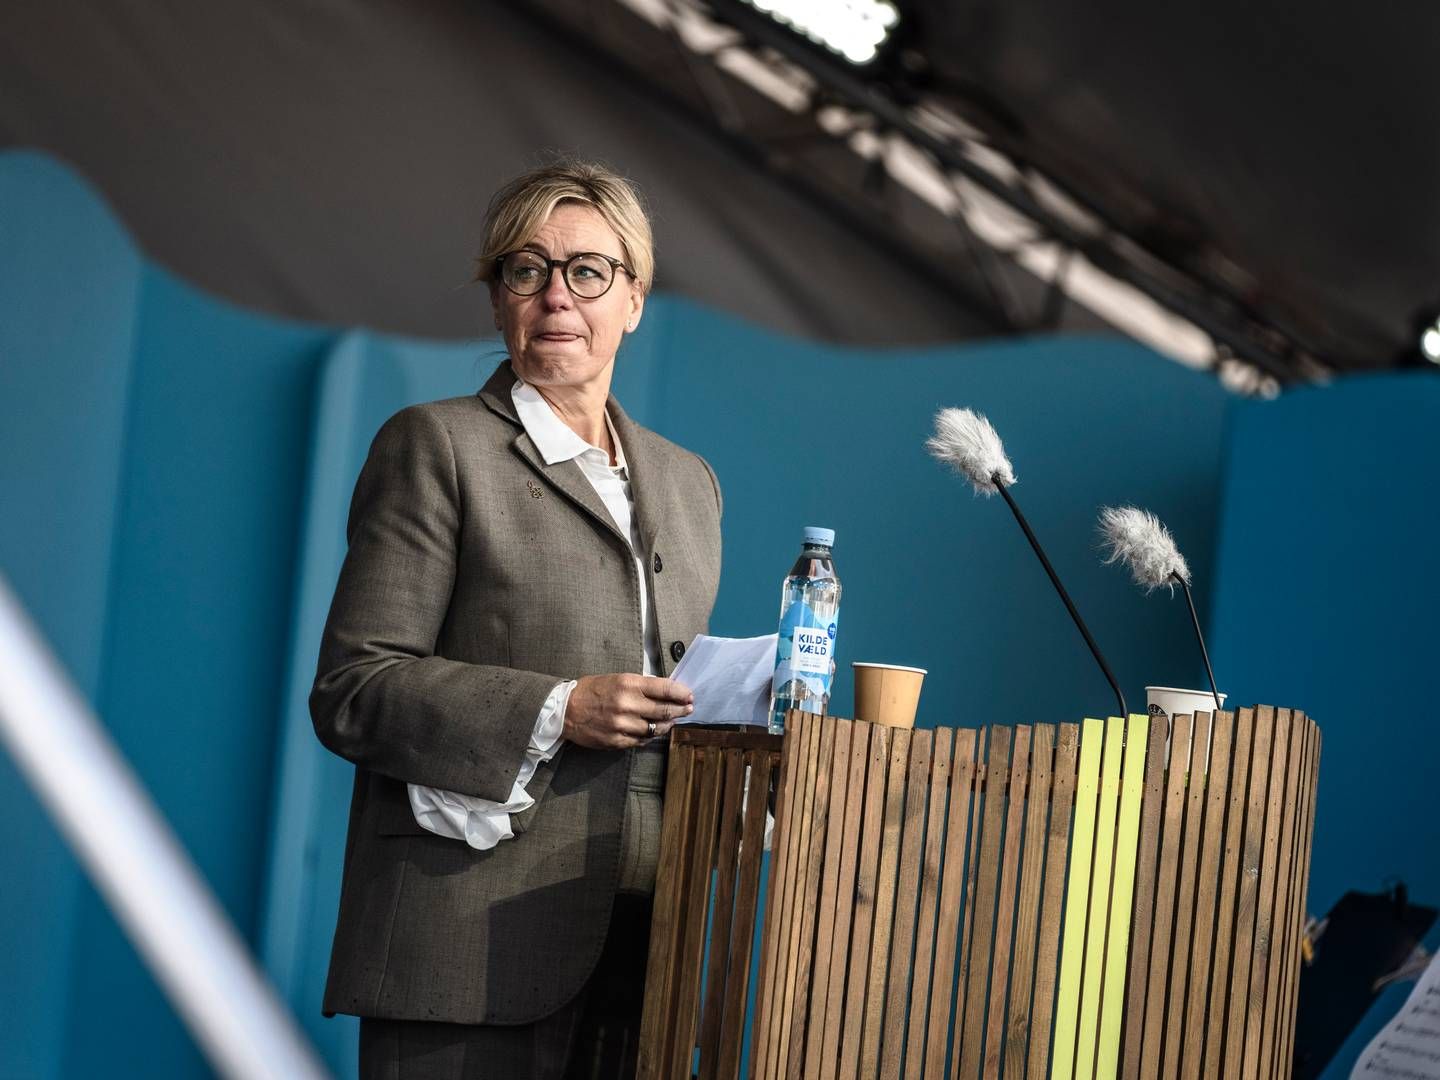 Folkemødets formand, Vibe Klarup, har sammen med resten af Folkemødets bestyrelse og ledelse været under heftig kritik. | Foto: Thomas Traasdahl/Ritzau Scanpix